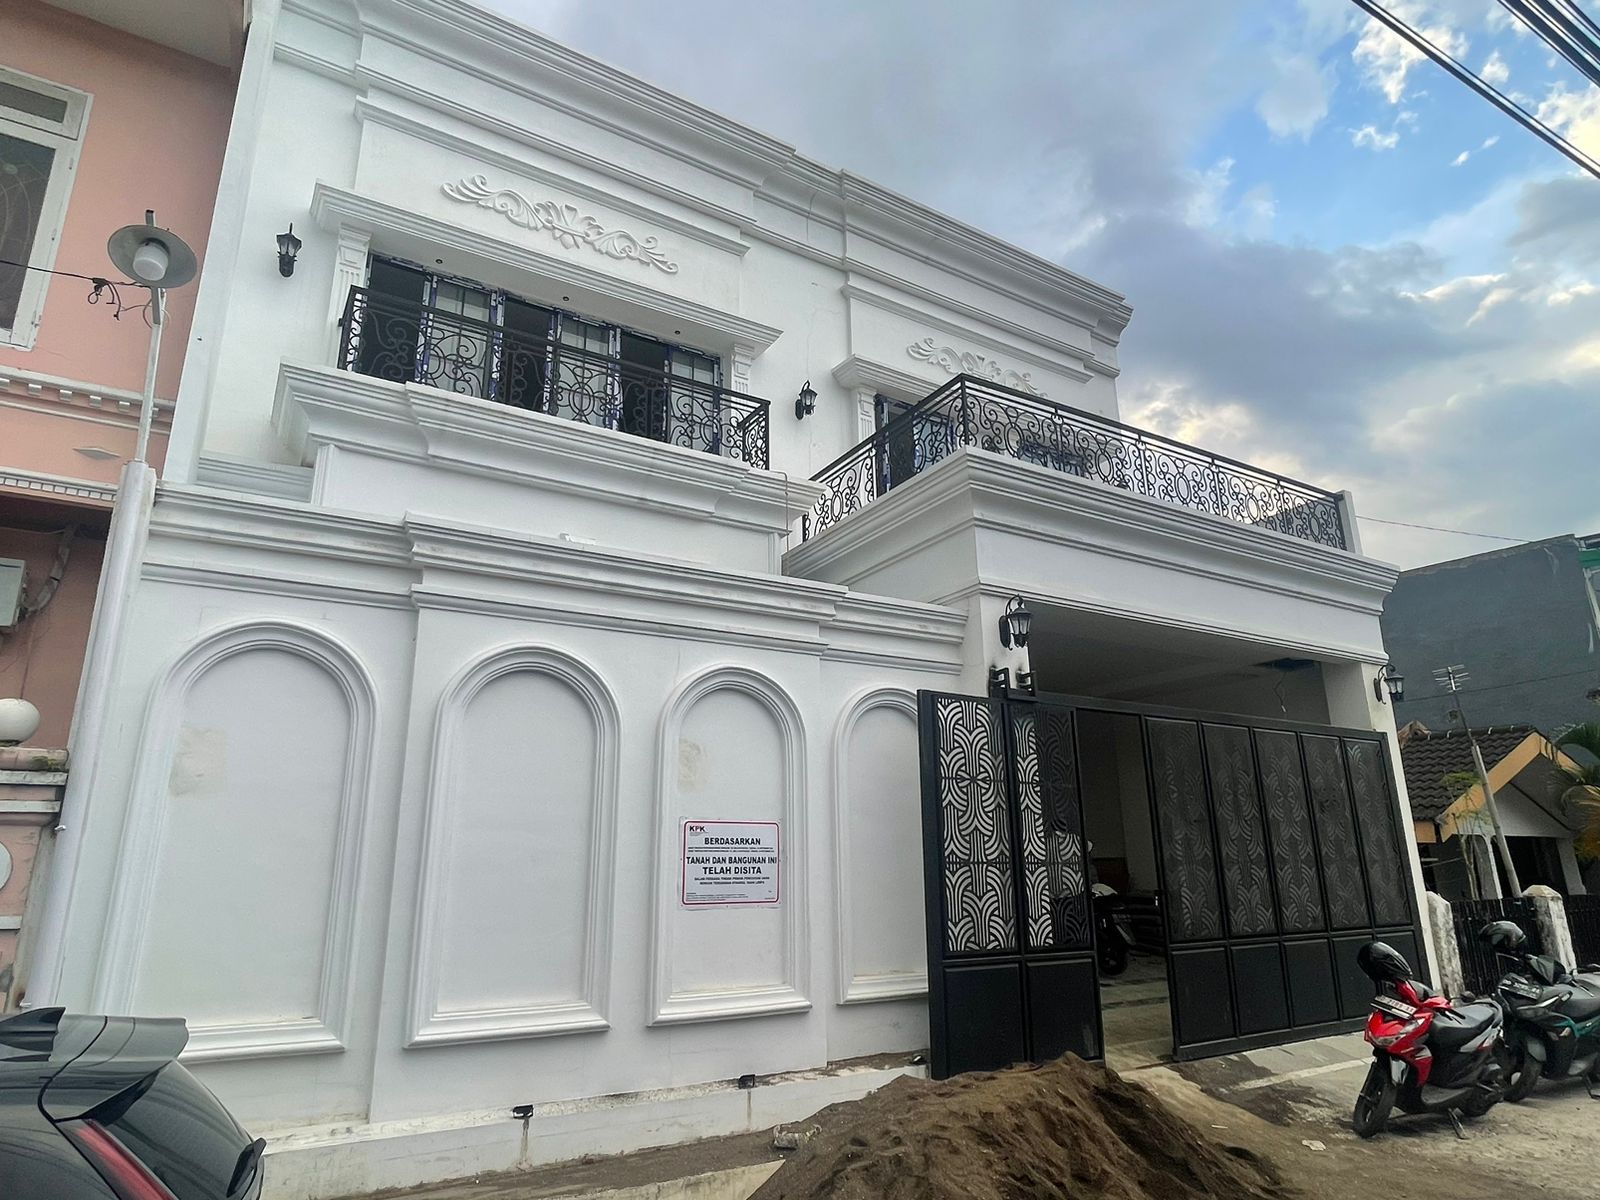 Mengintip Rumah Mewah SYL yang Disita KPK di Makassar, Seharga Rp 4,5 Miliar dan Dibangun Hanya Setahun